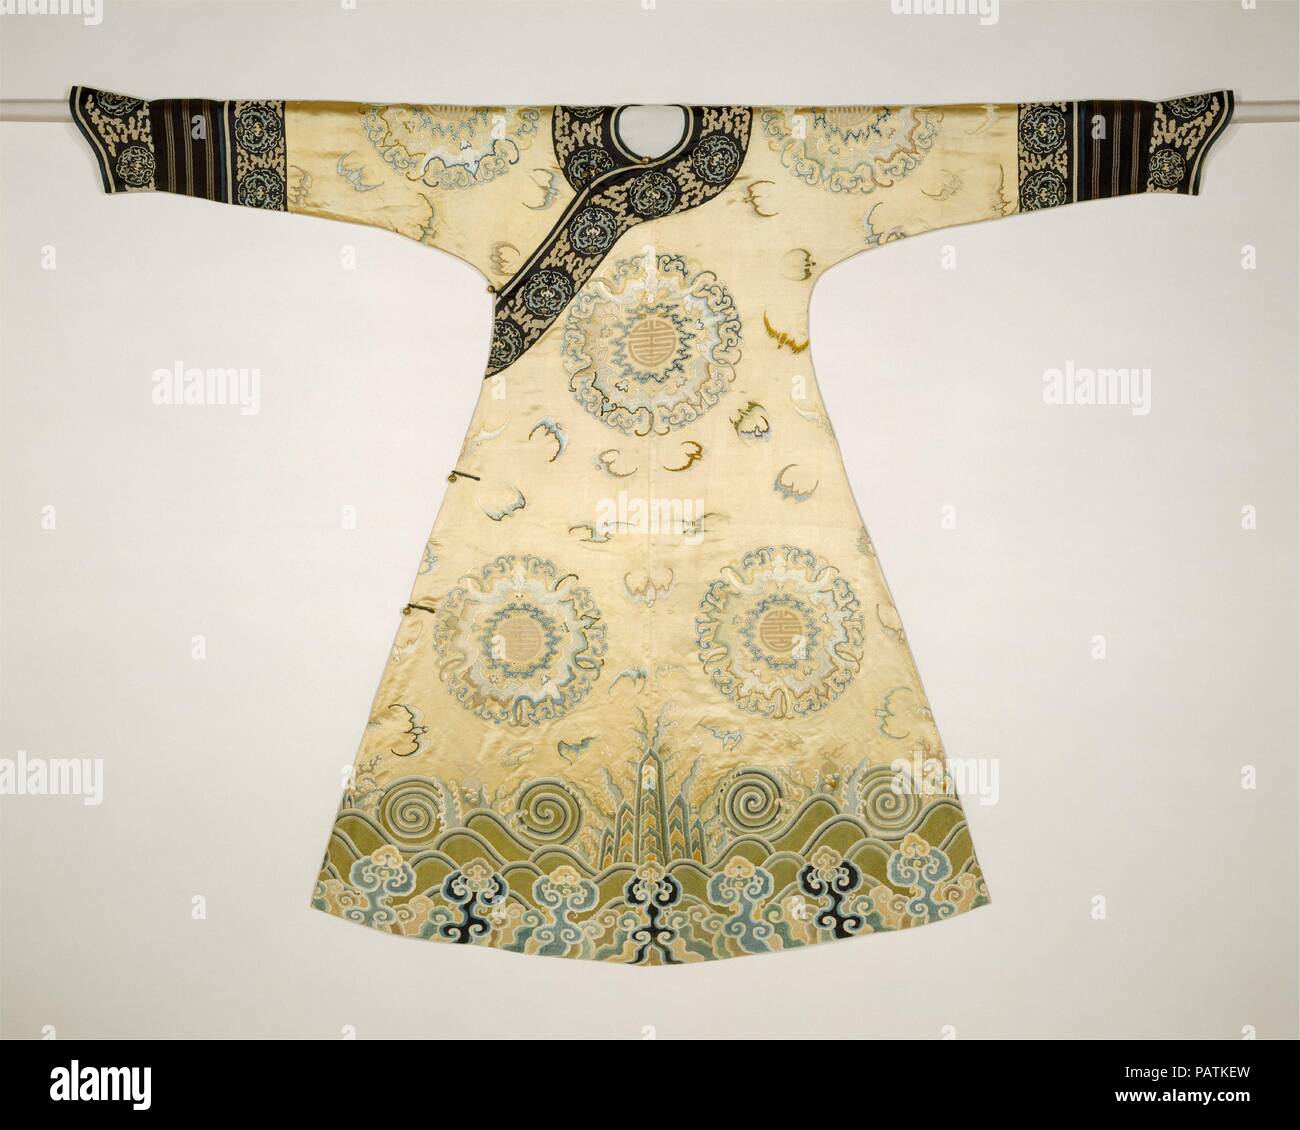 Robe de cérémonie femme (le médaillon) bat Robe. Culture : la Chine. Dimensions : 54 x 75 in. (137,2 x 190,5 cm). Date : première moitié du 18e siècle. Musée : Metropolitan Museum of Art, New York, USA. Banque D'Images